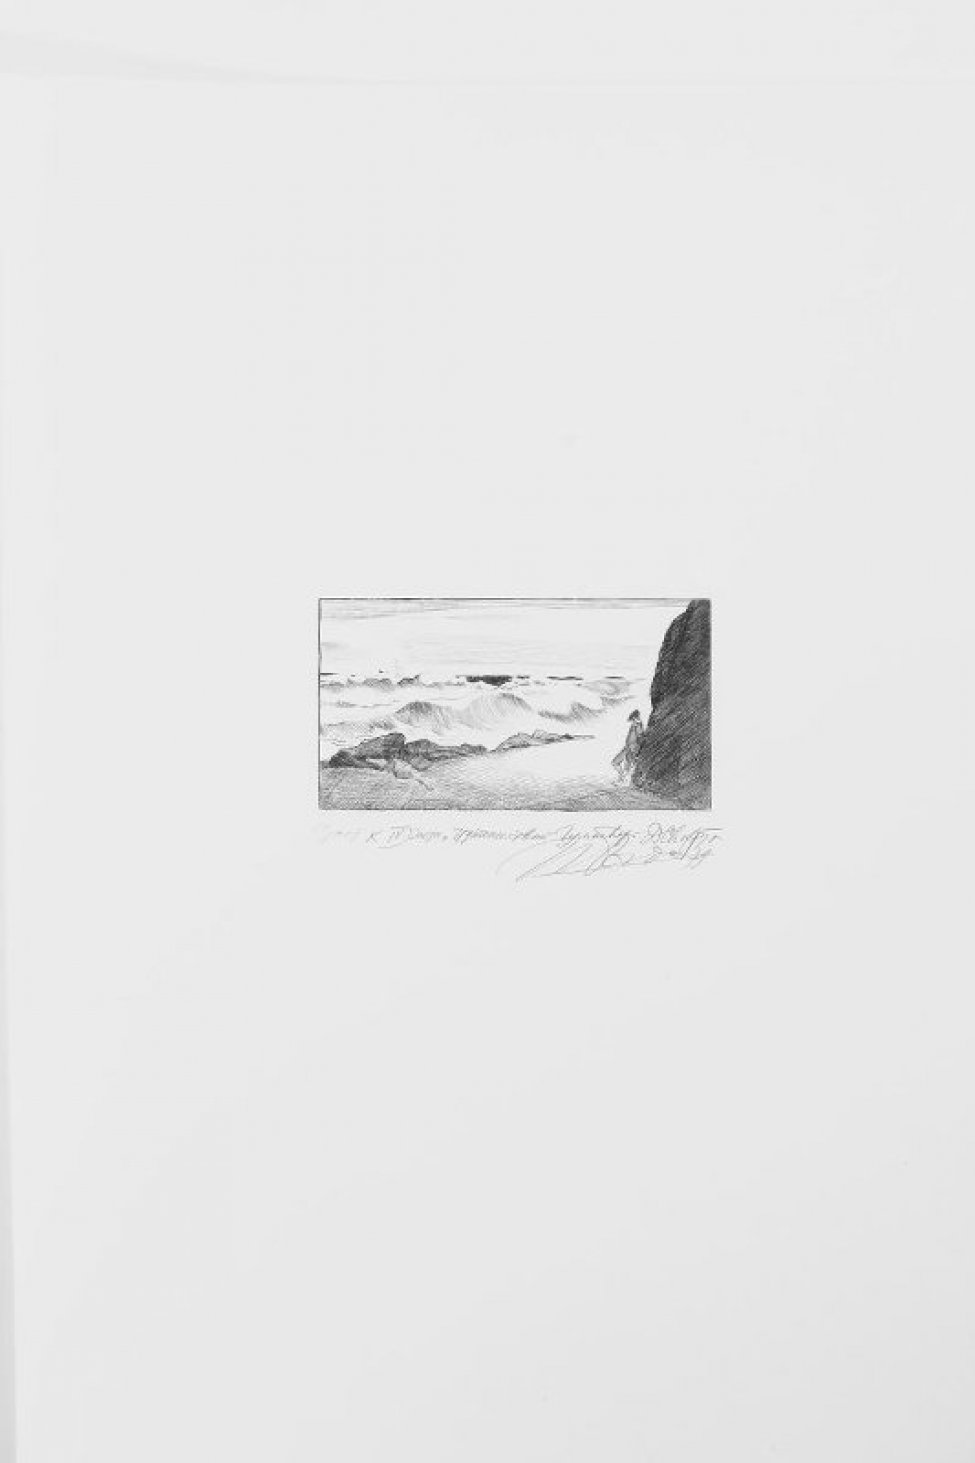 Изображен мужчина, стоящий у скалы на берегу моря.